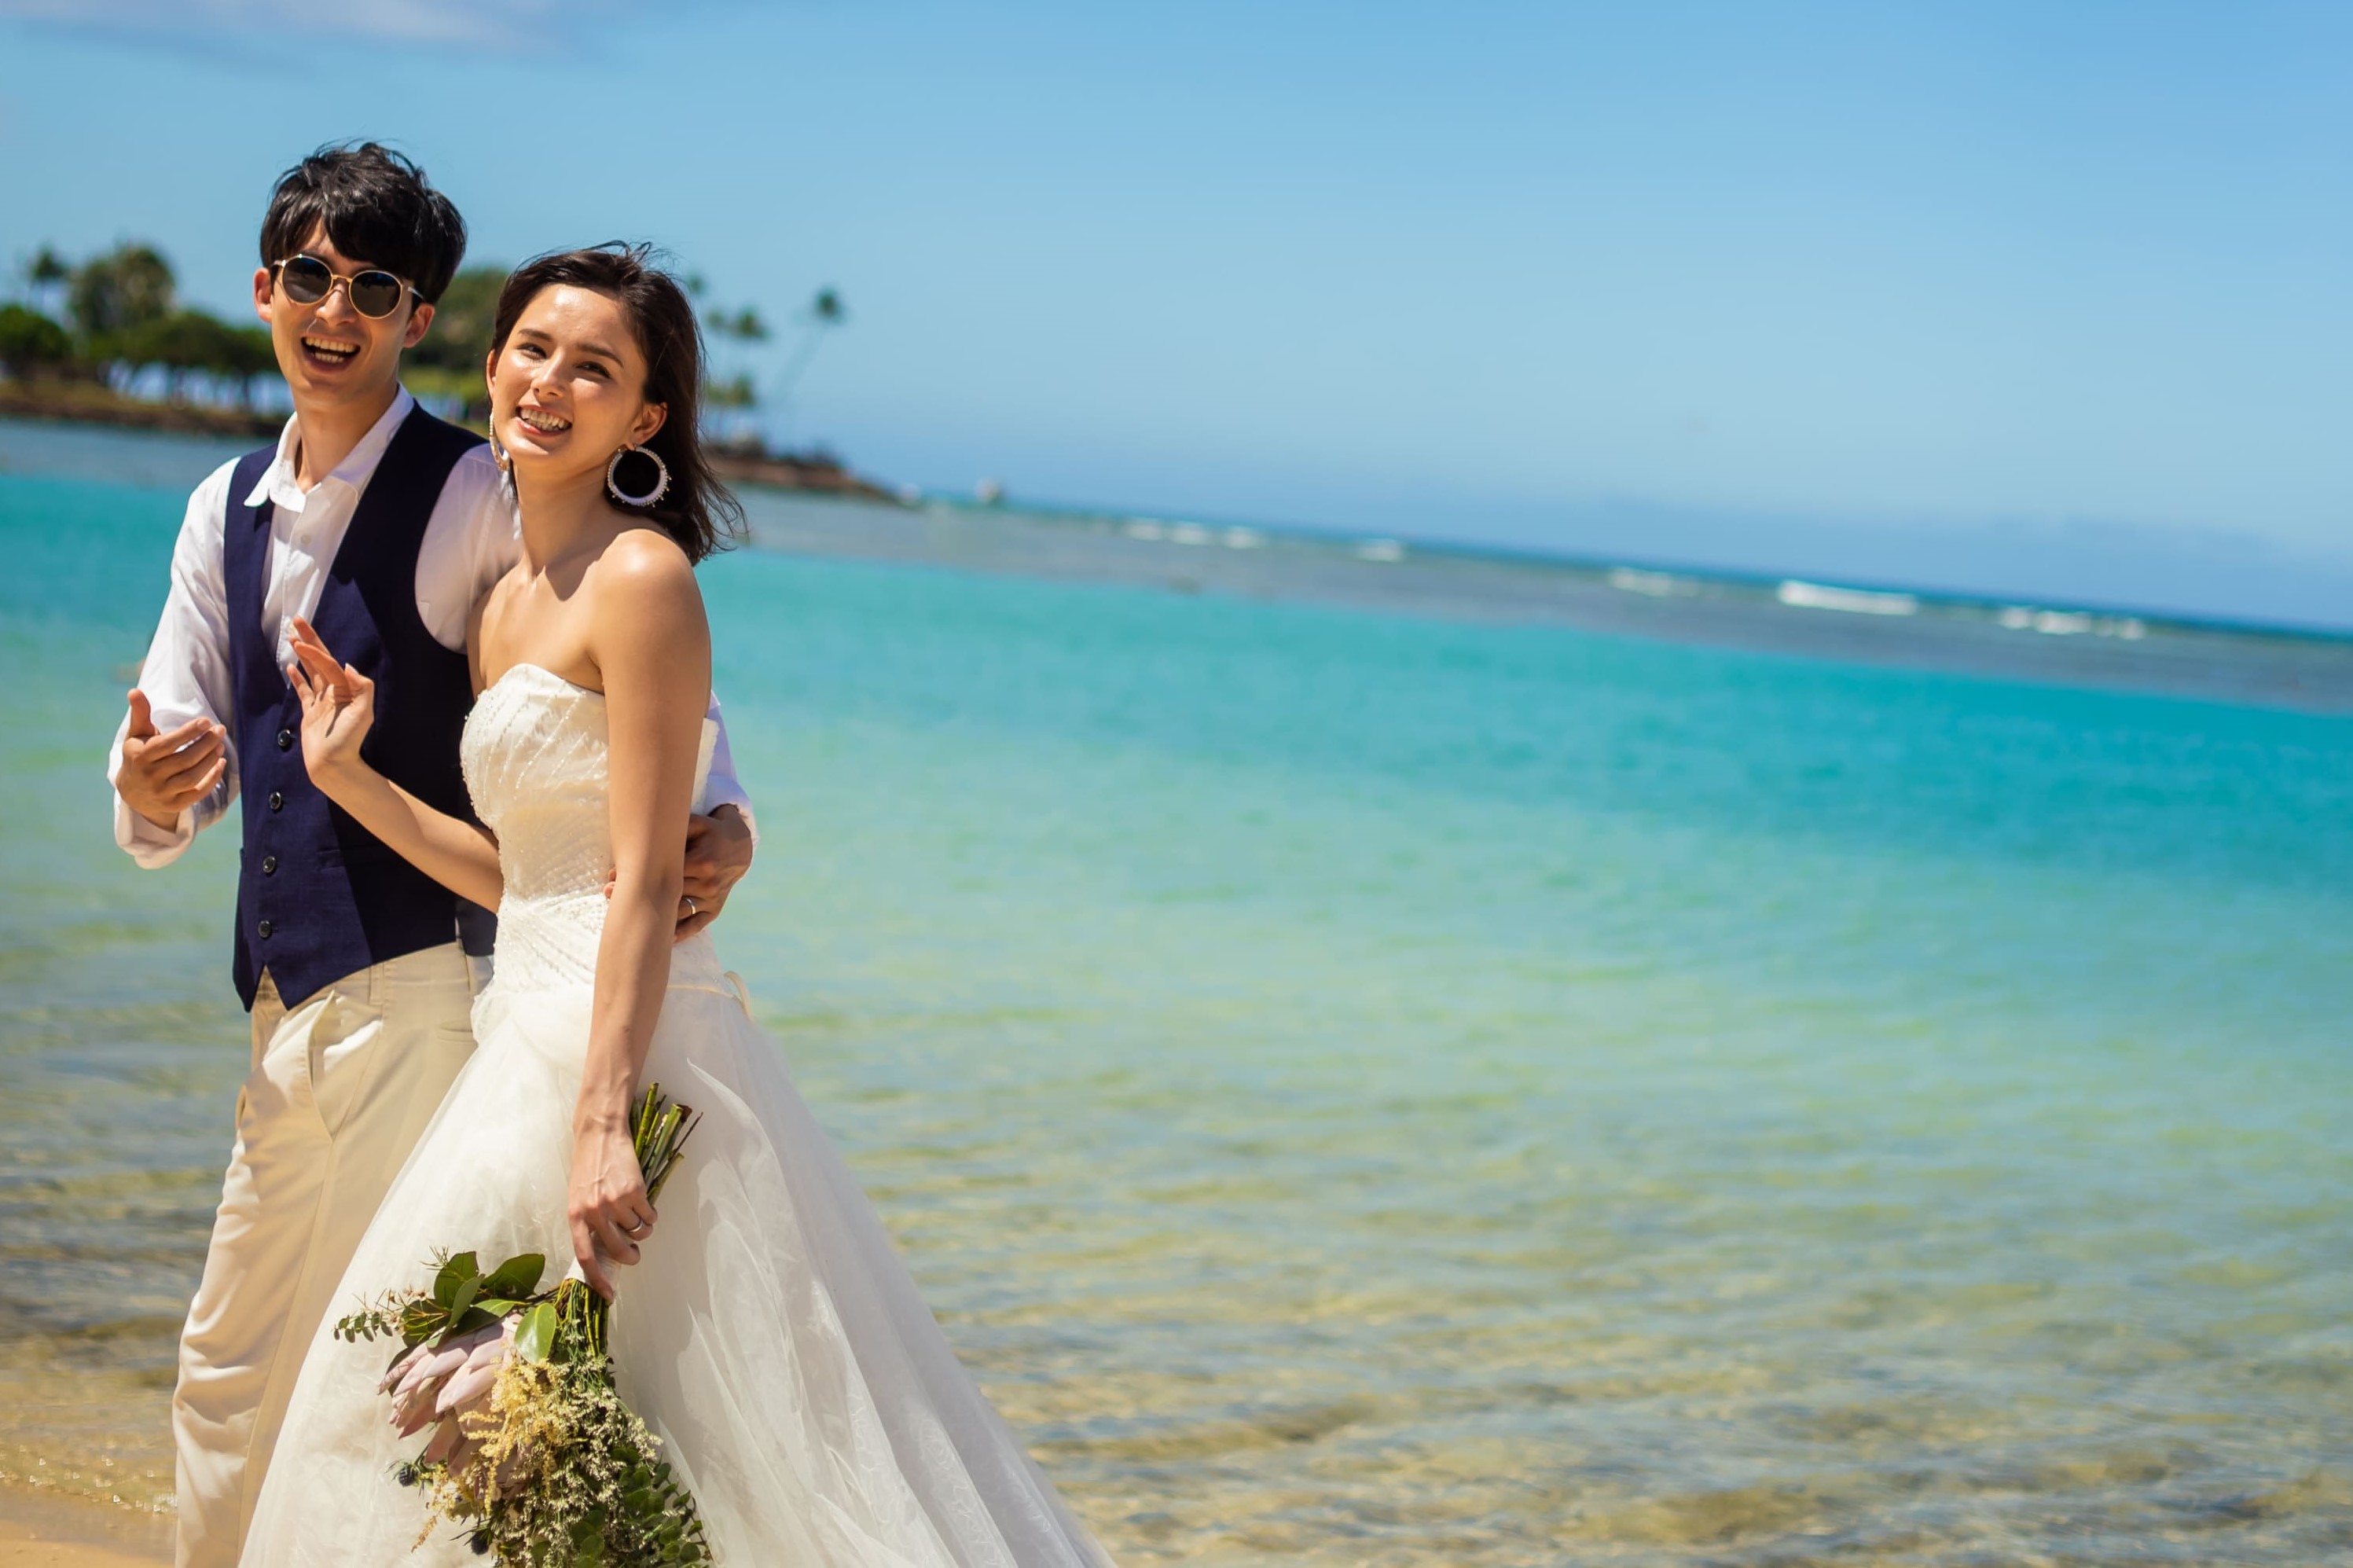 Couture Naoco Wedding 絶対叶える22年のハワイ挙式 ハワイ ウエディングキャンペーン 株式会社クラウディアコスチュームサービスのプレスリリース